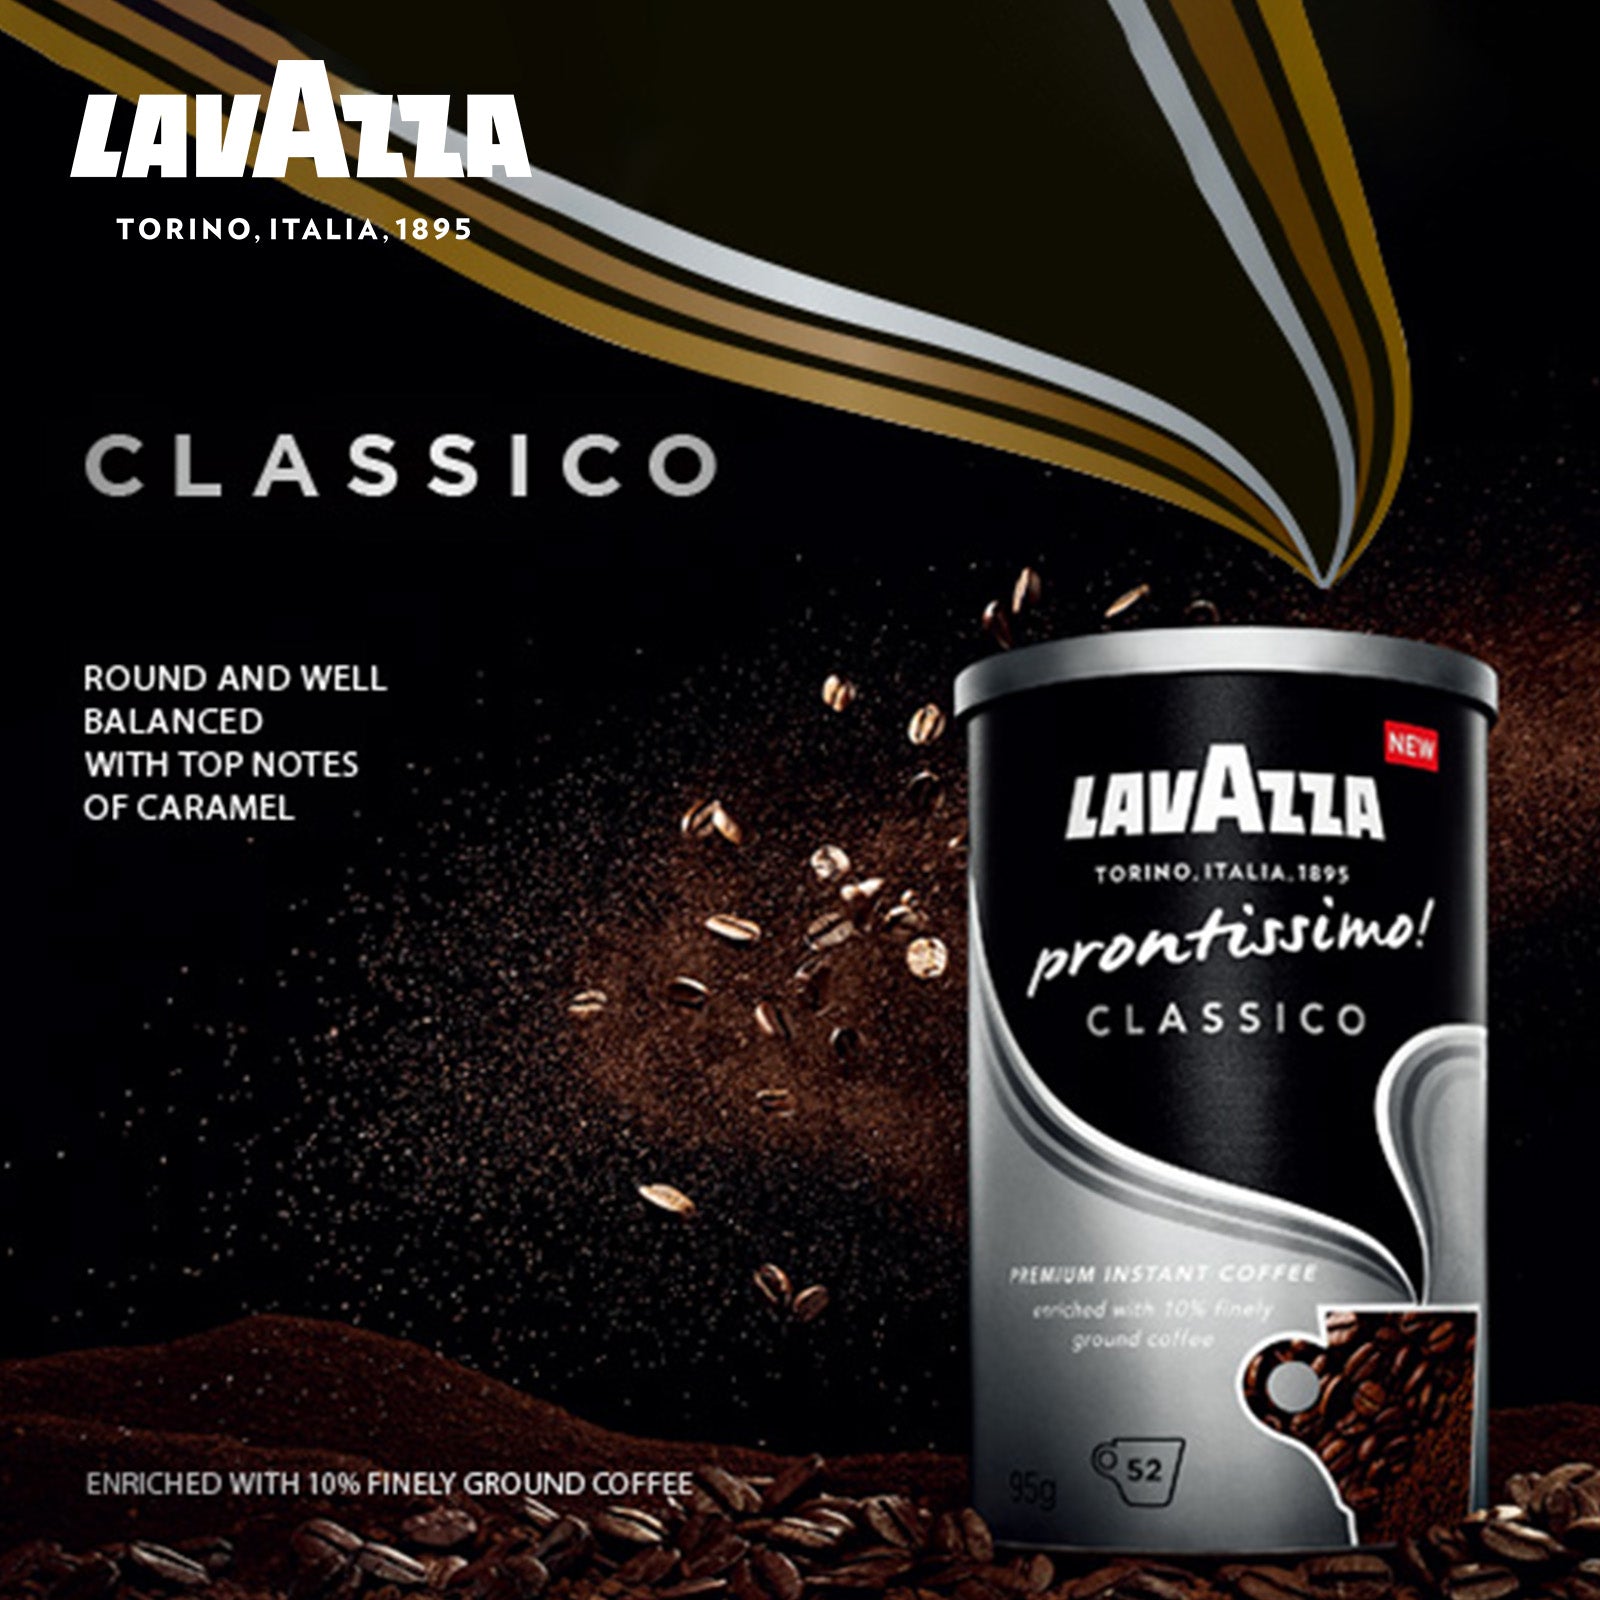 LAVAZZA prontissimo! Premium Instant Coffee 95G